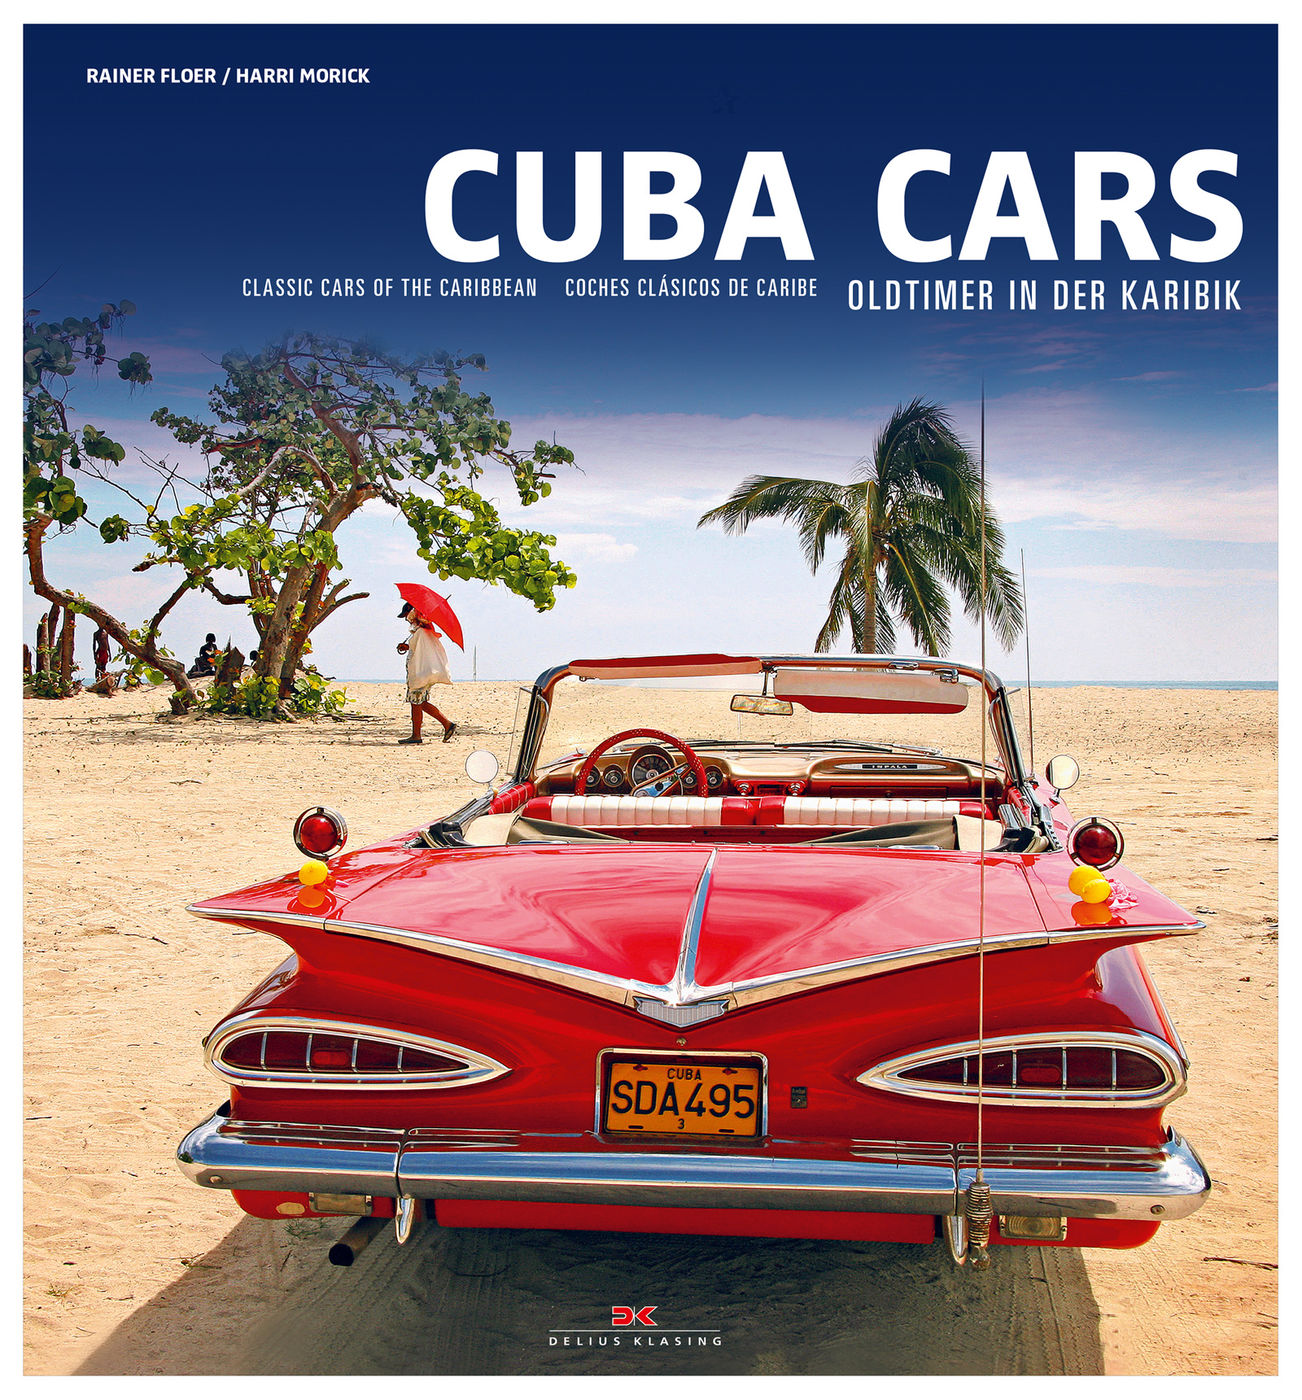 Cuba Cars
Cuba Cars
Cuba Cars